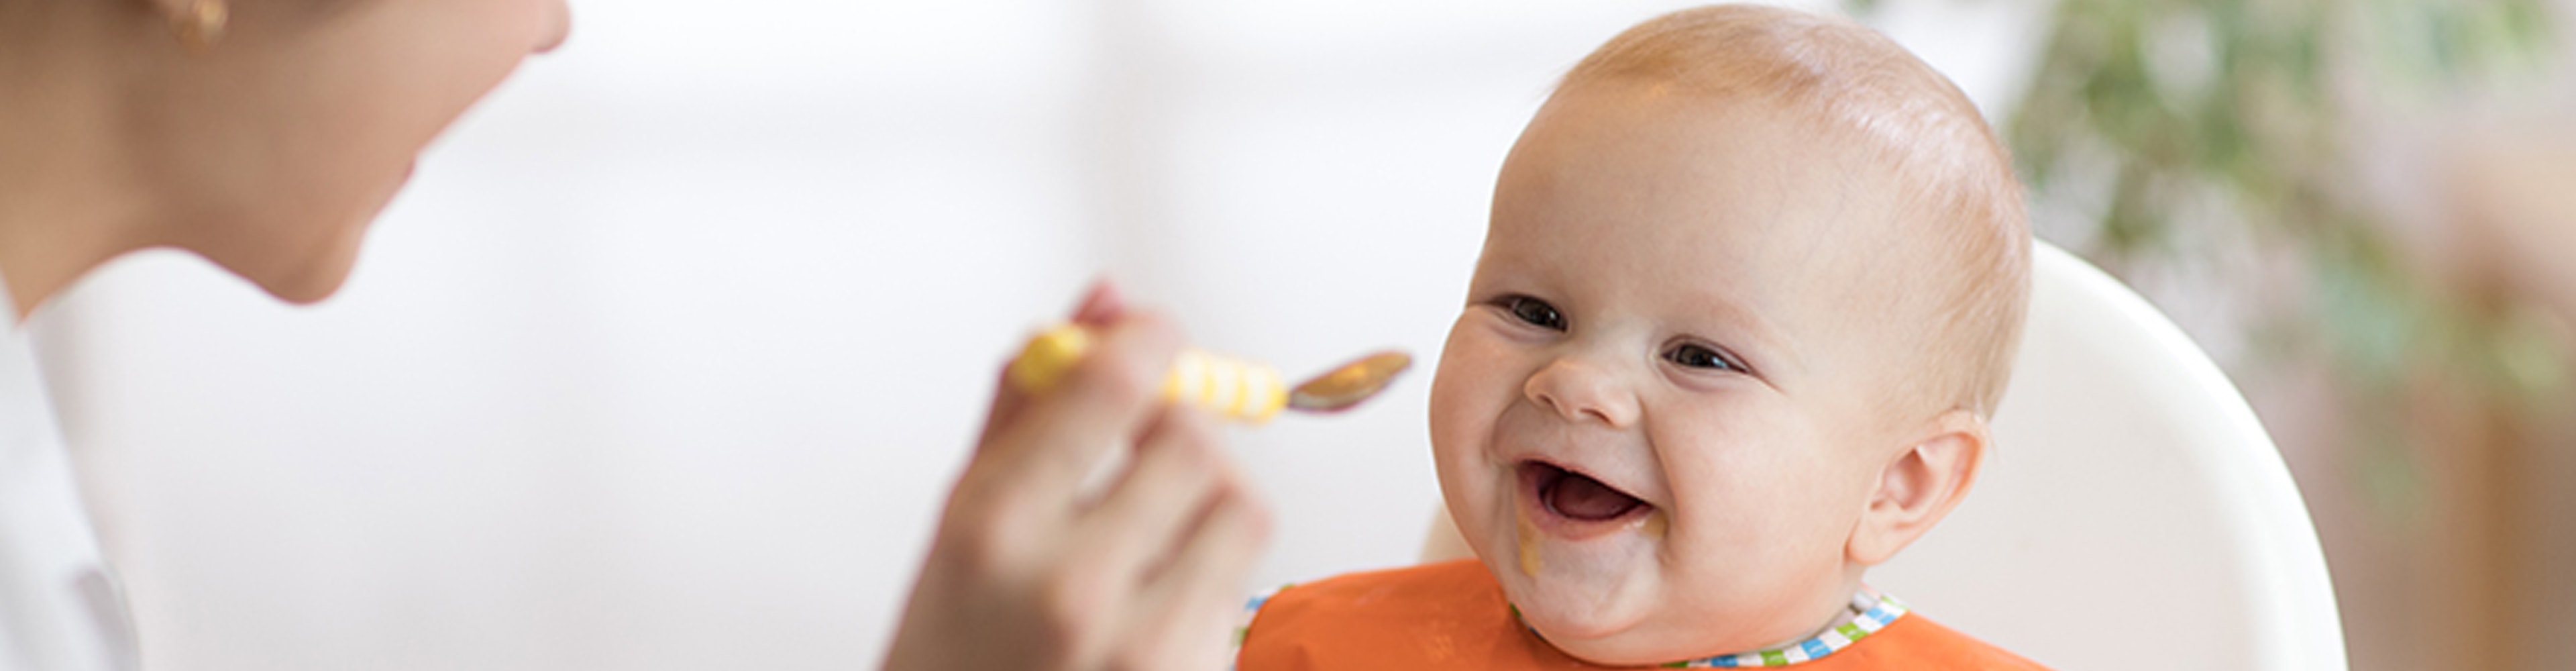 Was sind die allgemeinen Empfehlungen zur Ernährung im ersten Lebensjahr?